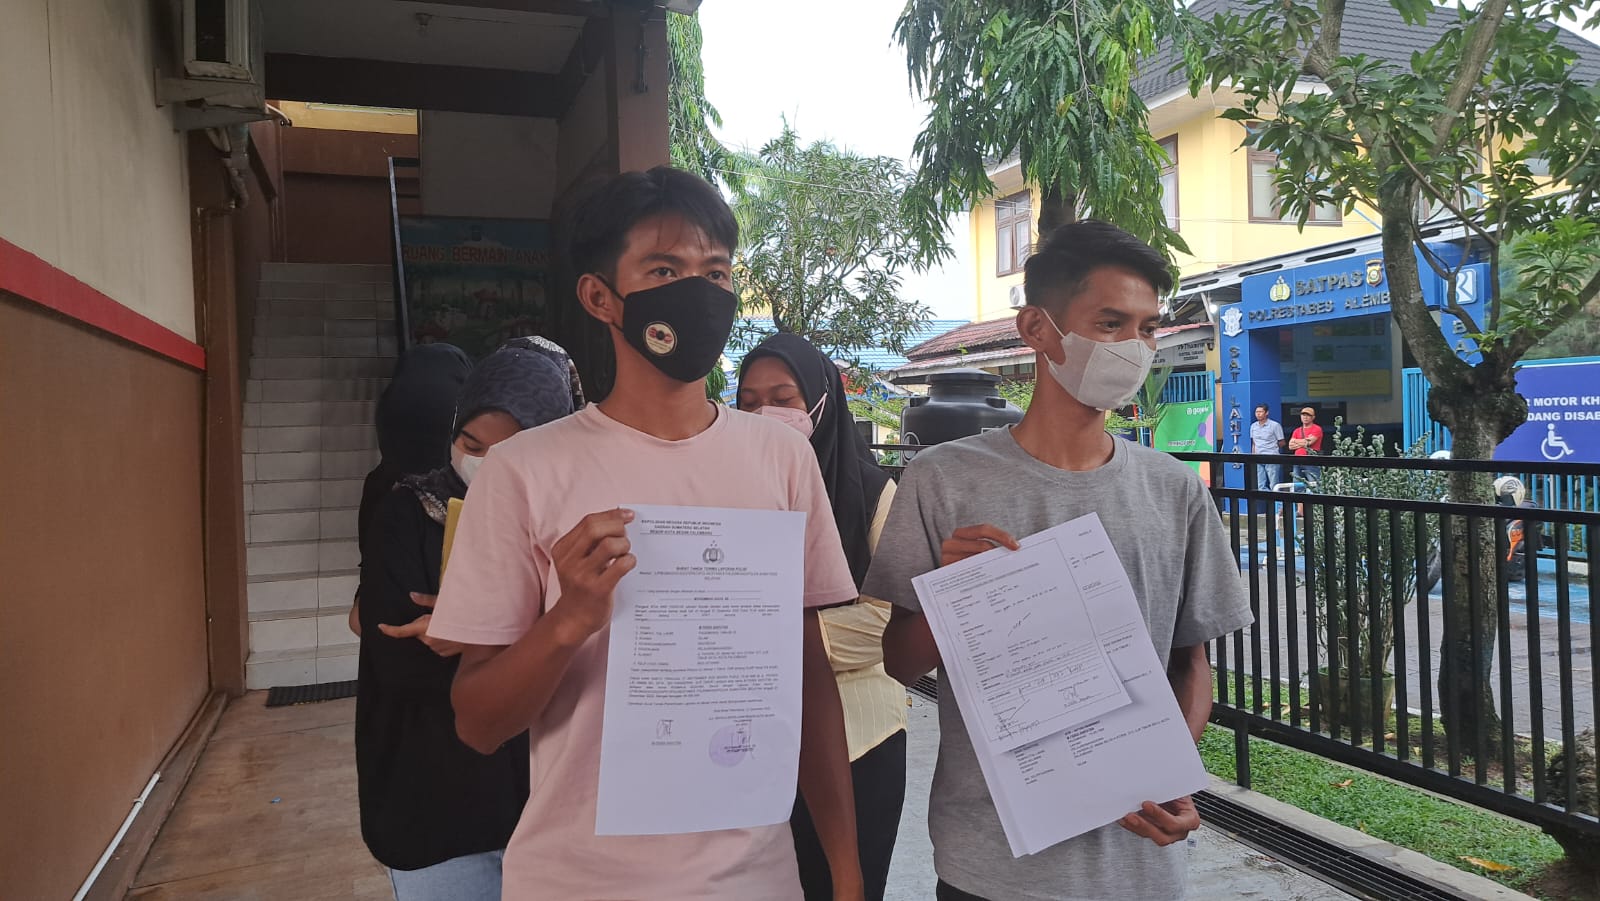 7 Orang Warga Jalan Papera Mengaku Ditipu Oknum Dosen Wanita di Palembang  